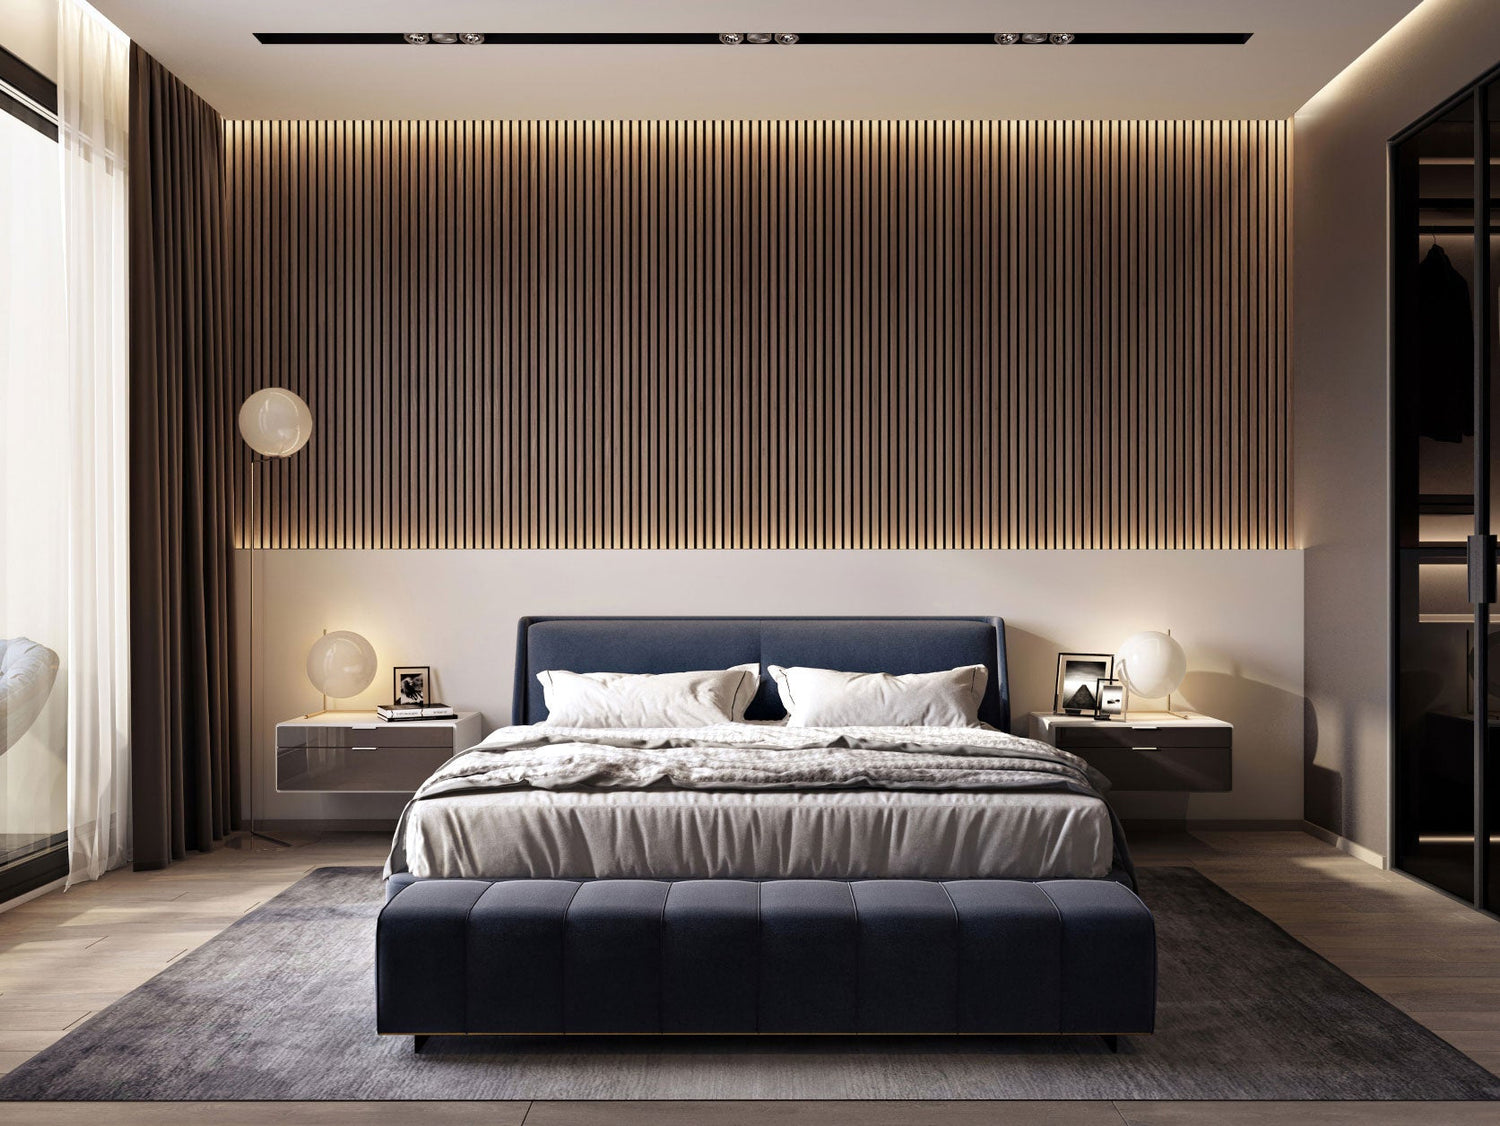 Walnut wood acoustic slat veneer panel applied in a modern well designed bedroom setting.